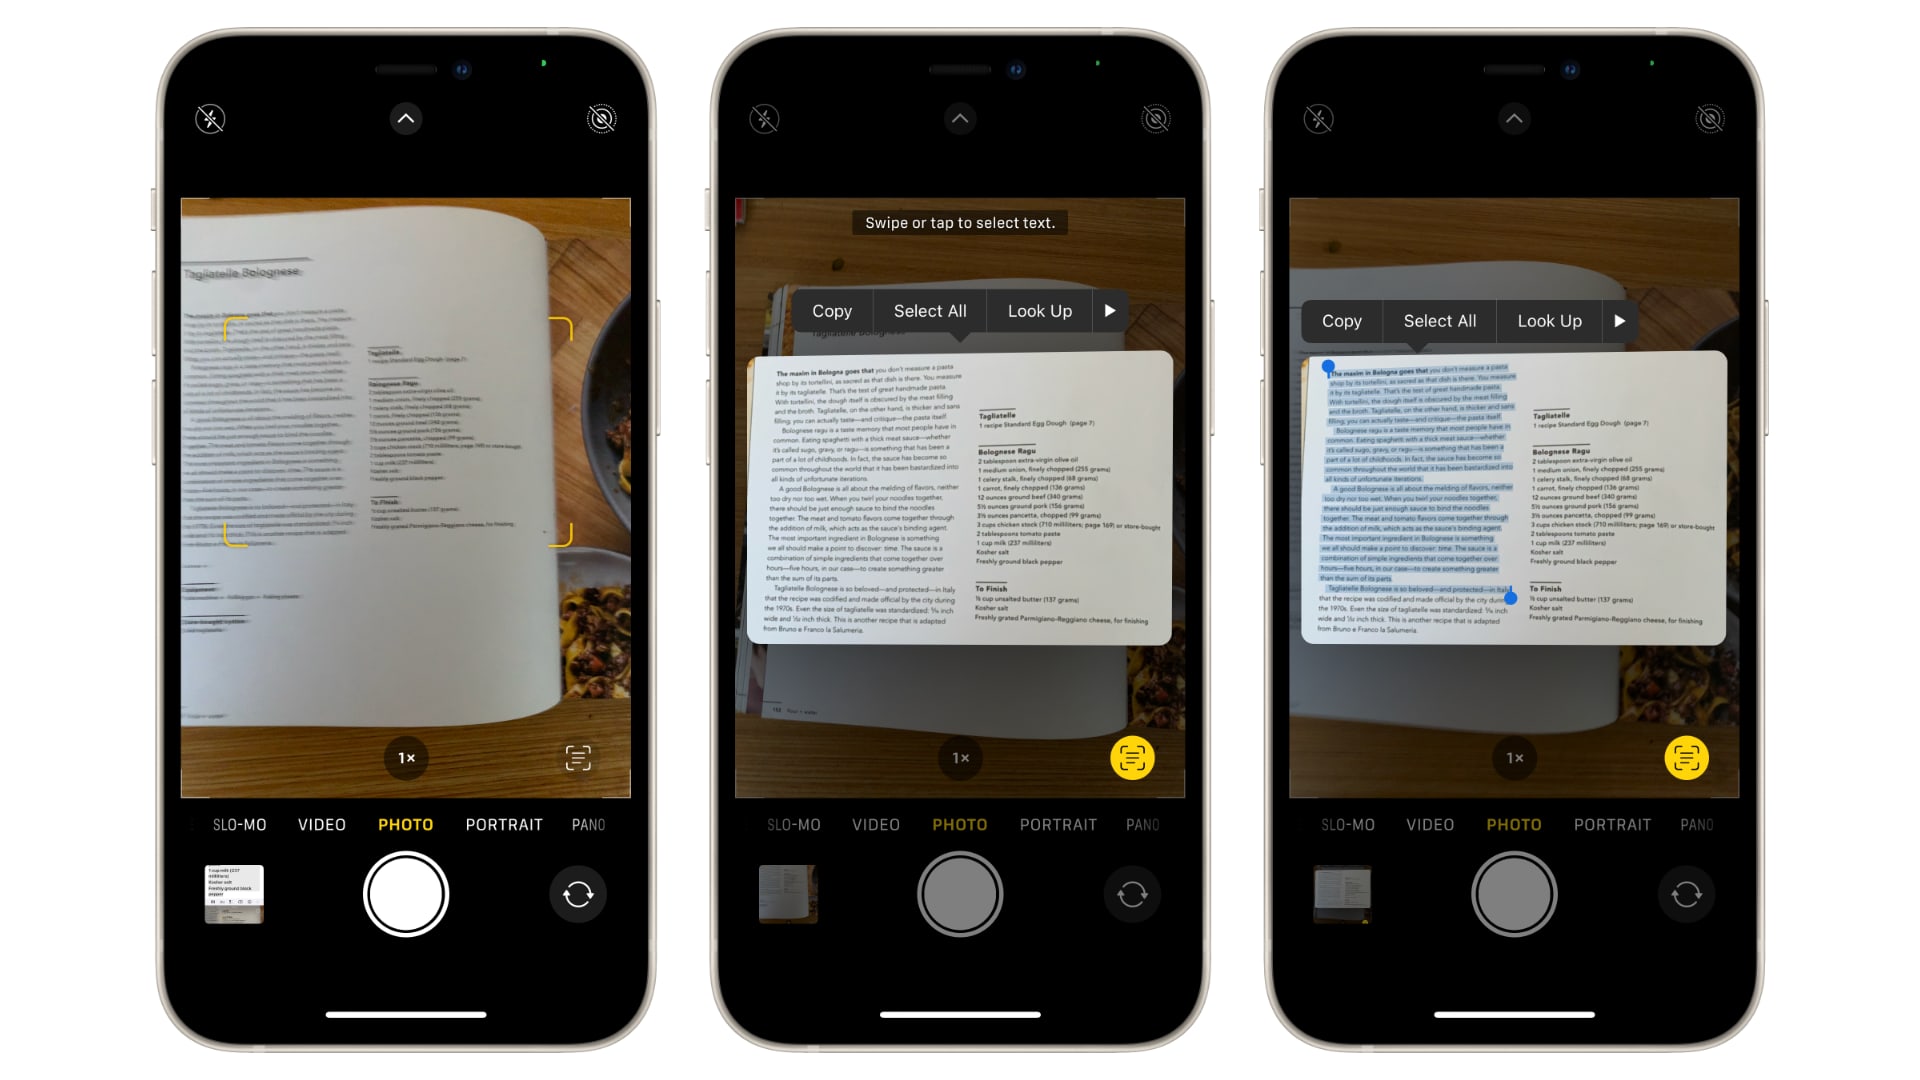 Thủ thuật - Tiện ích - Cách sao chép và cắt dán nội dung văn bản trong ảnh trên iPhone (Hình 3).